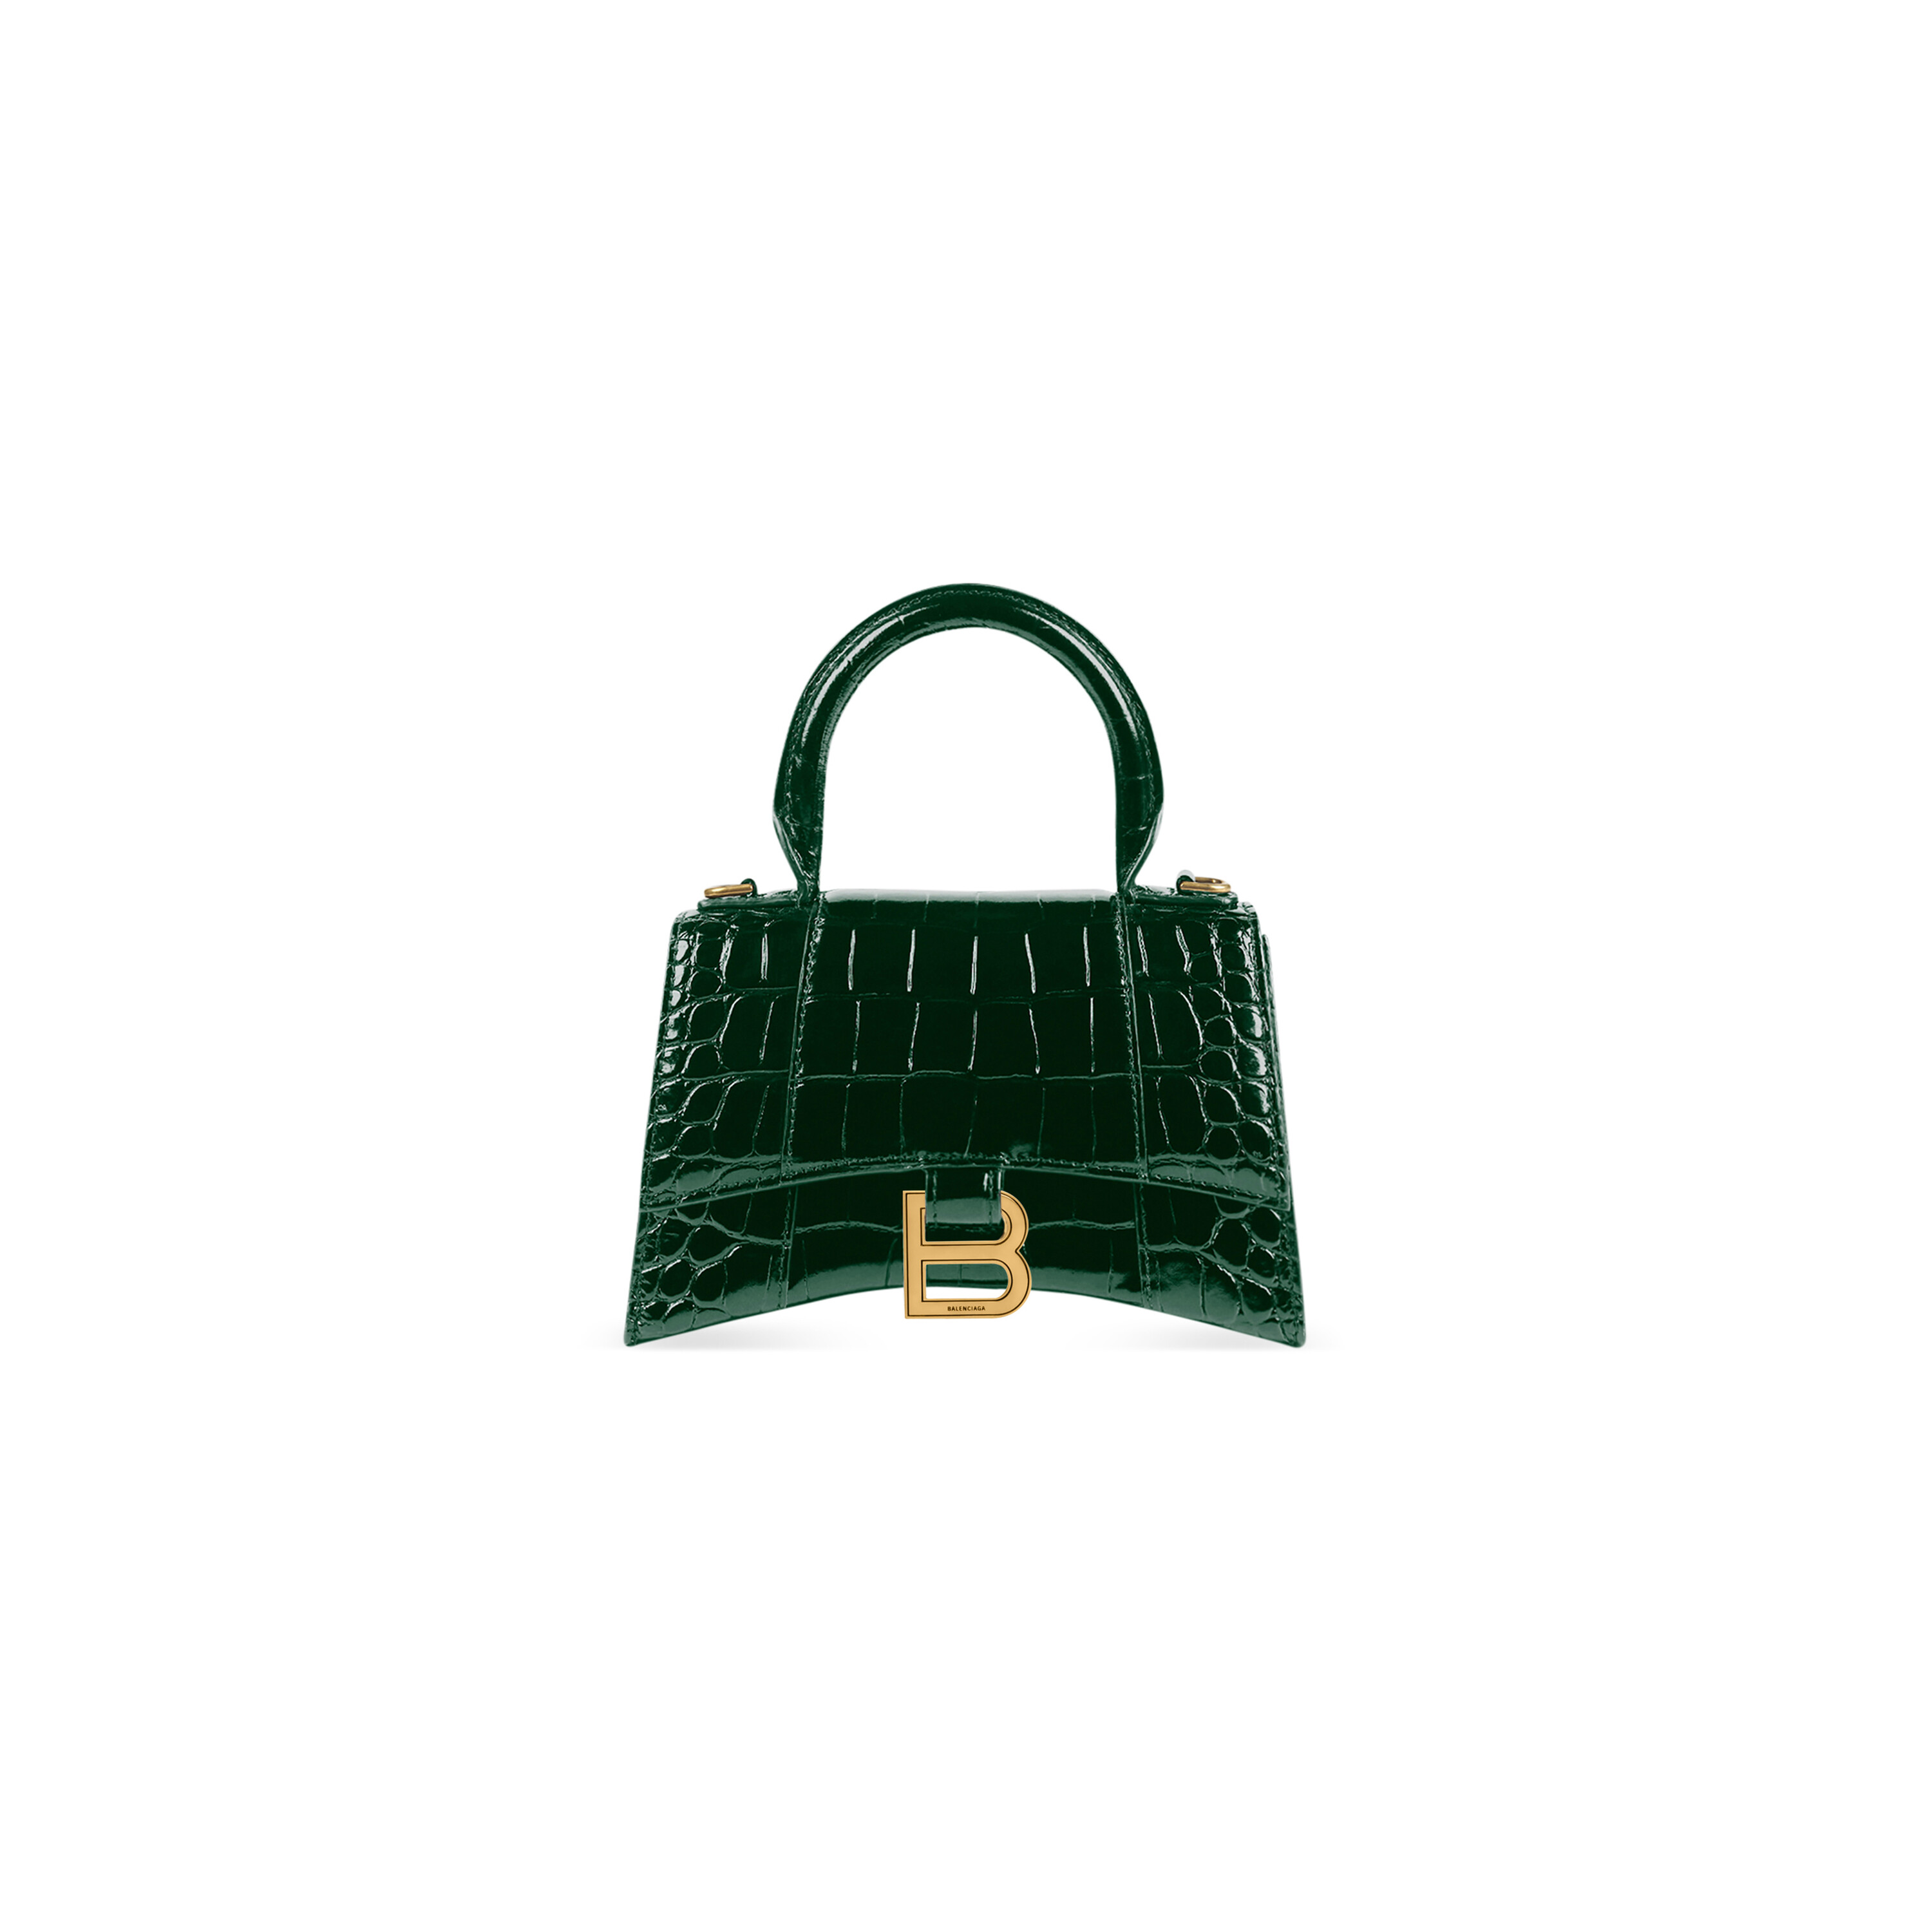 Hourglass XS Shoulder Bag in Light Green Balenciaga